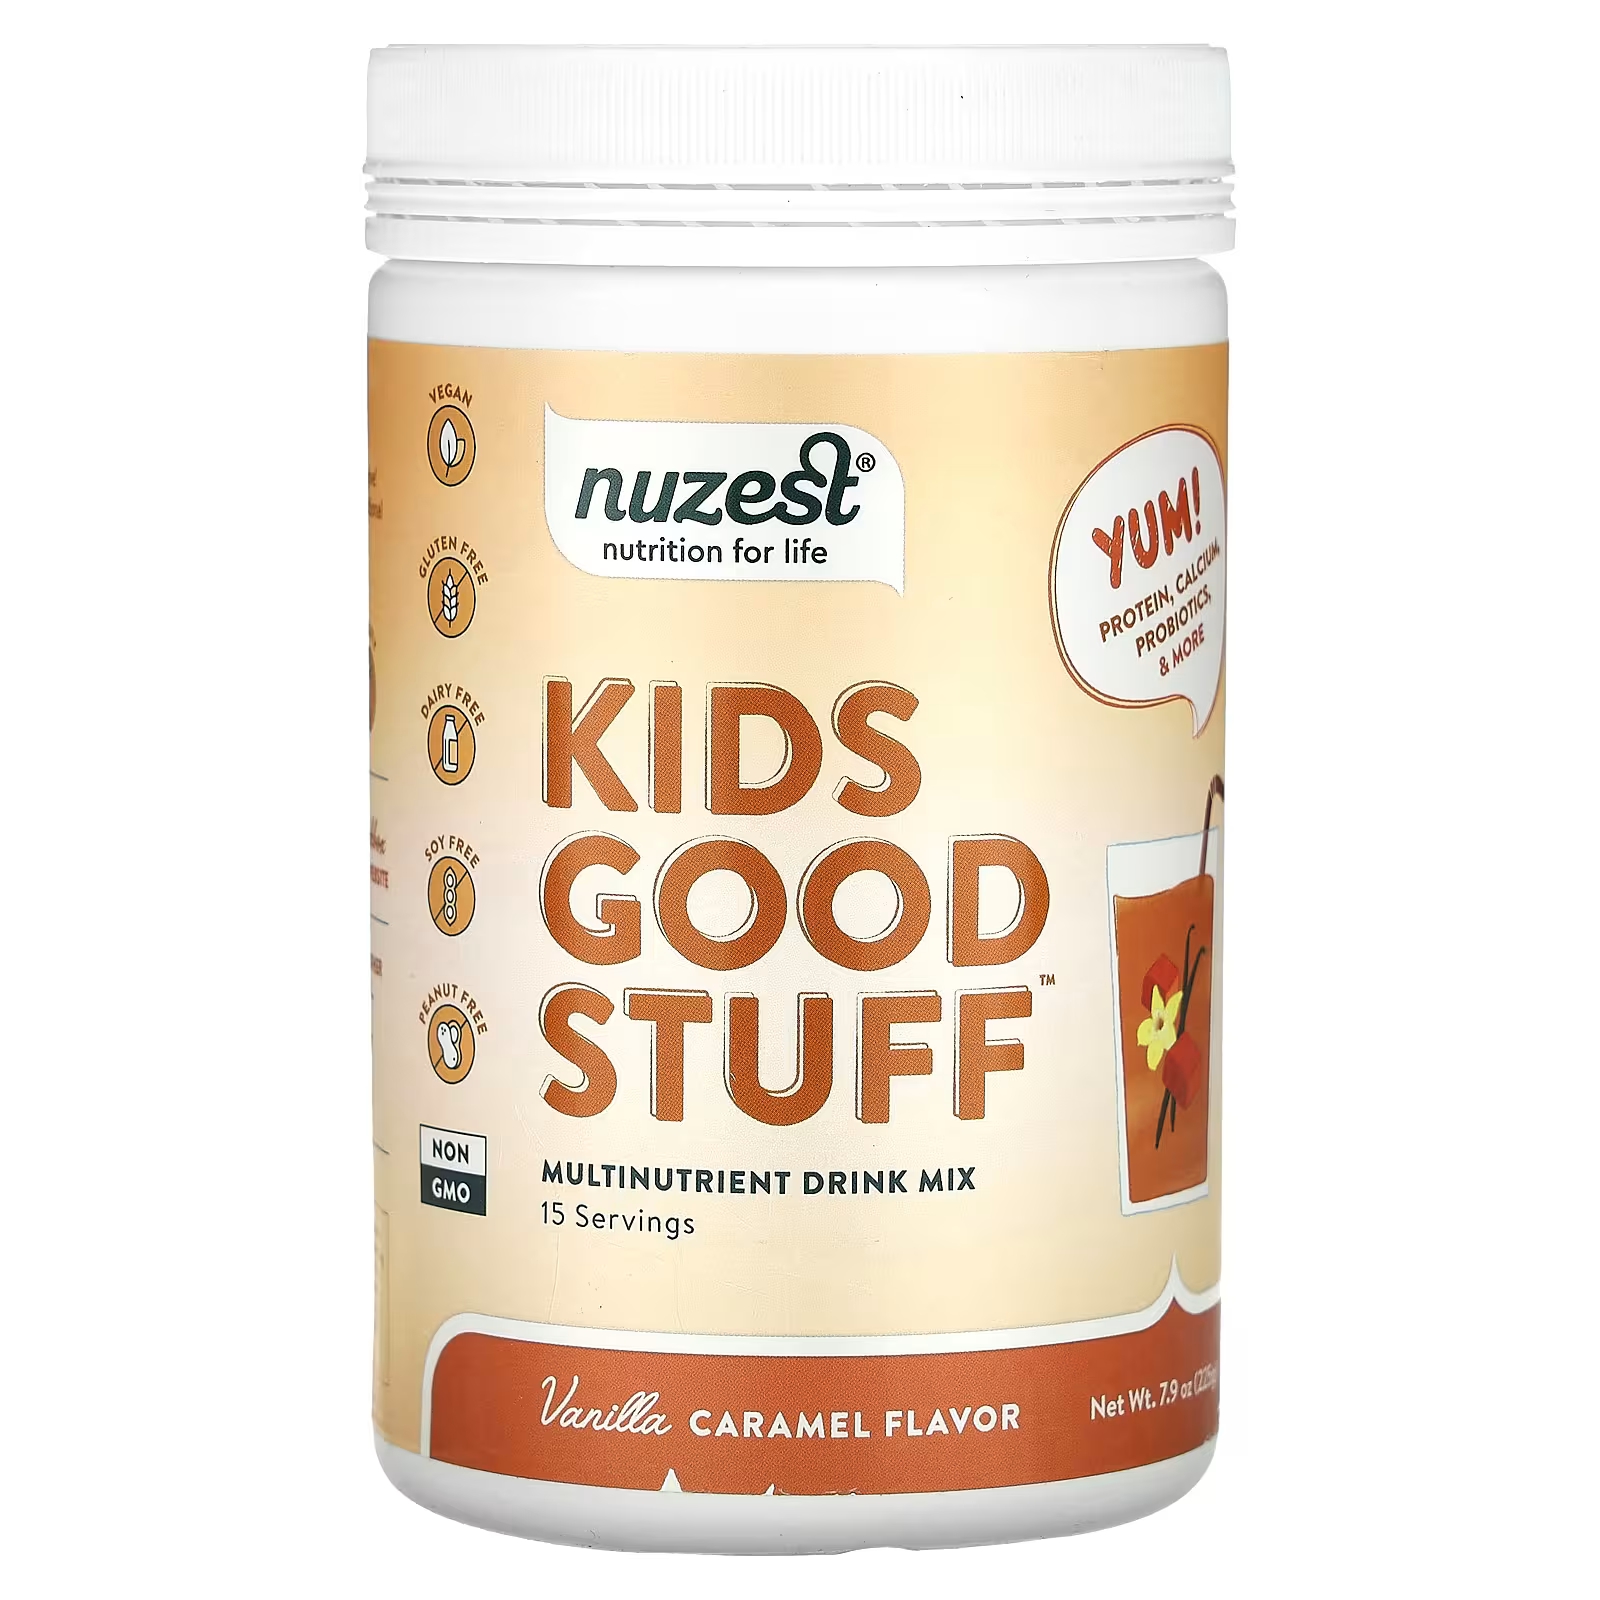 Мультипитательная смесь для напитков Kids Good Stuff с ванилью и карамелью, 7,9 унций (225 г) Nuzest